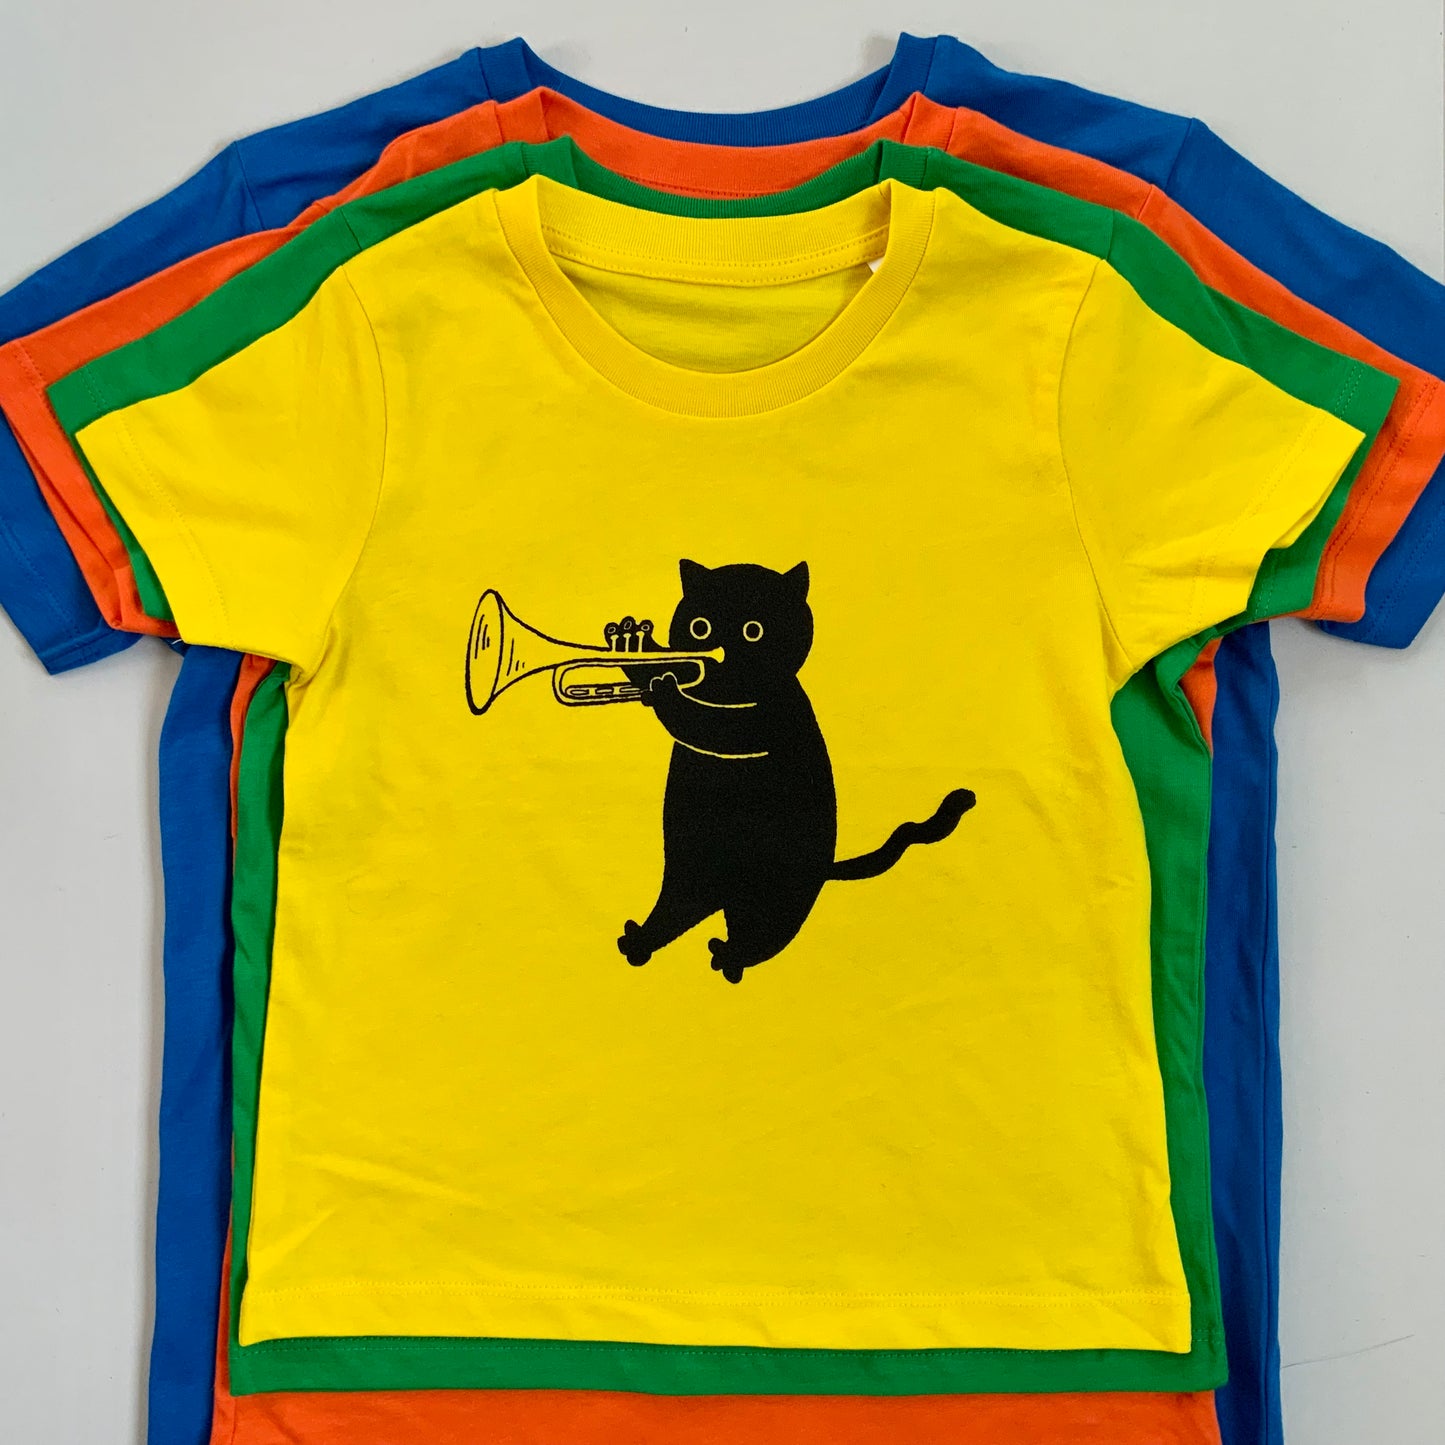 Jazz Cats kids t-shirt